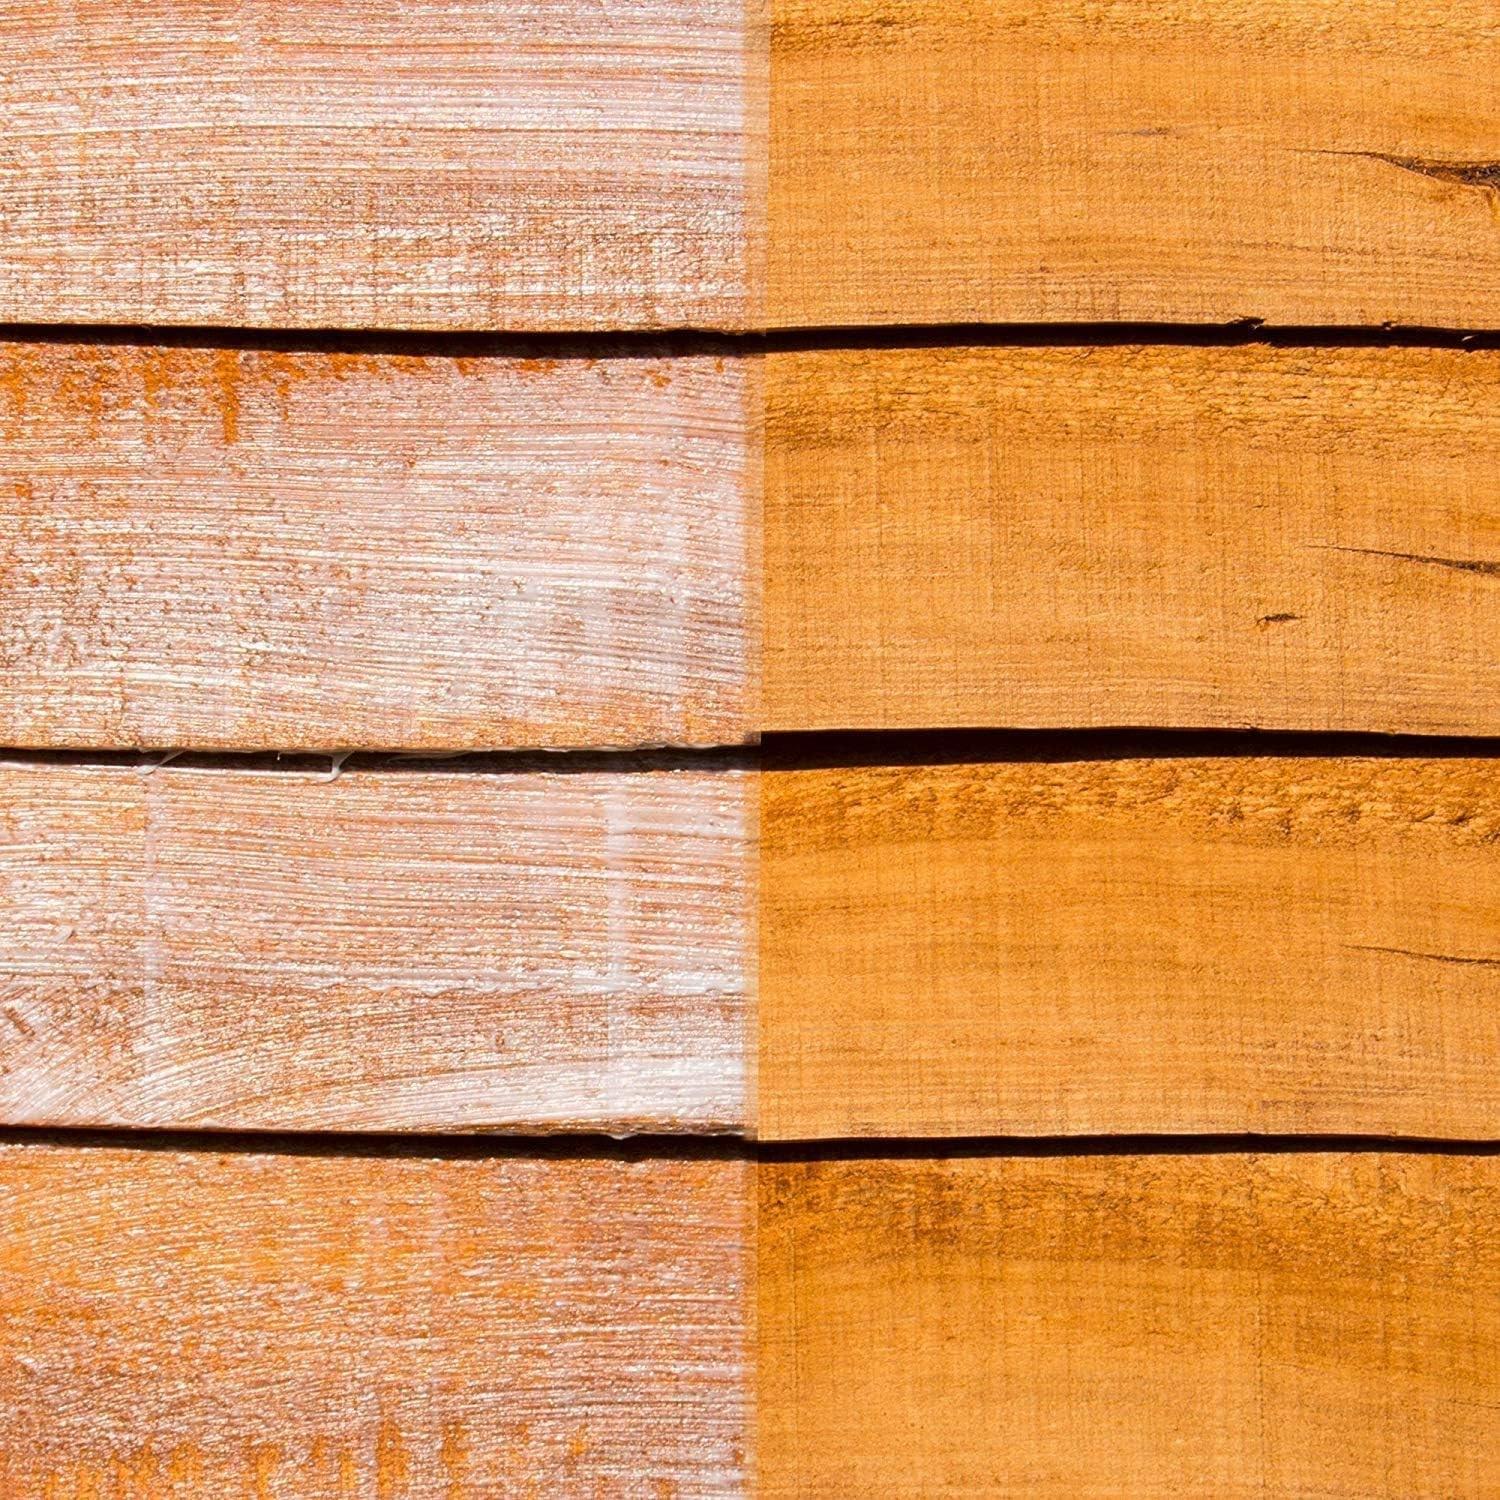 Trattamento protettivo per pavimenti in legno per esterni Roxil - Amazon